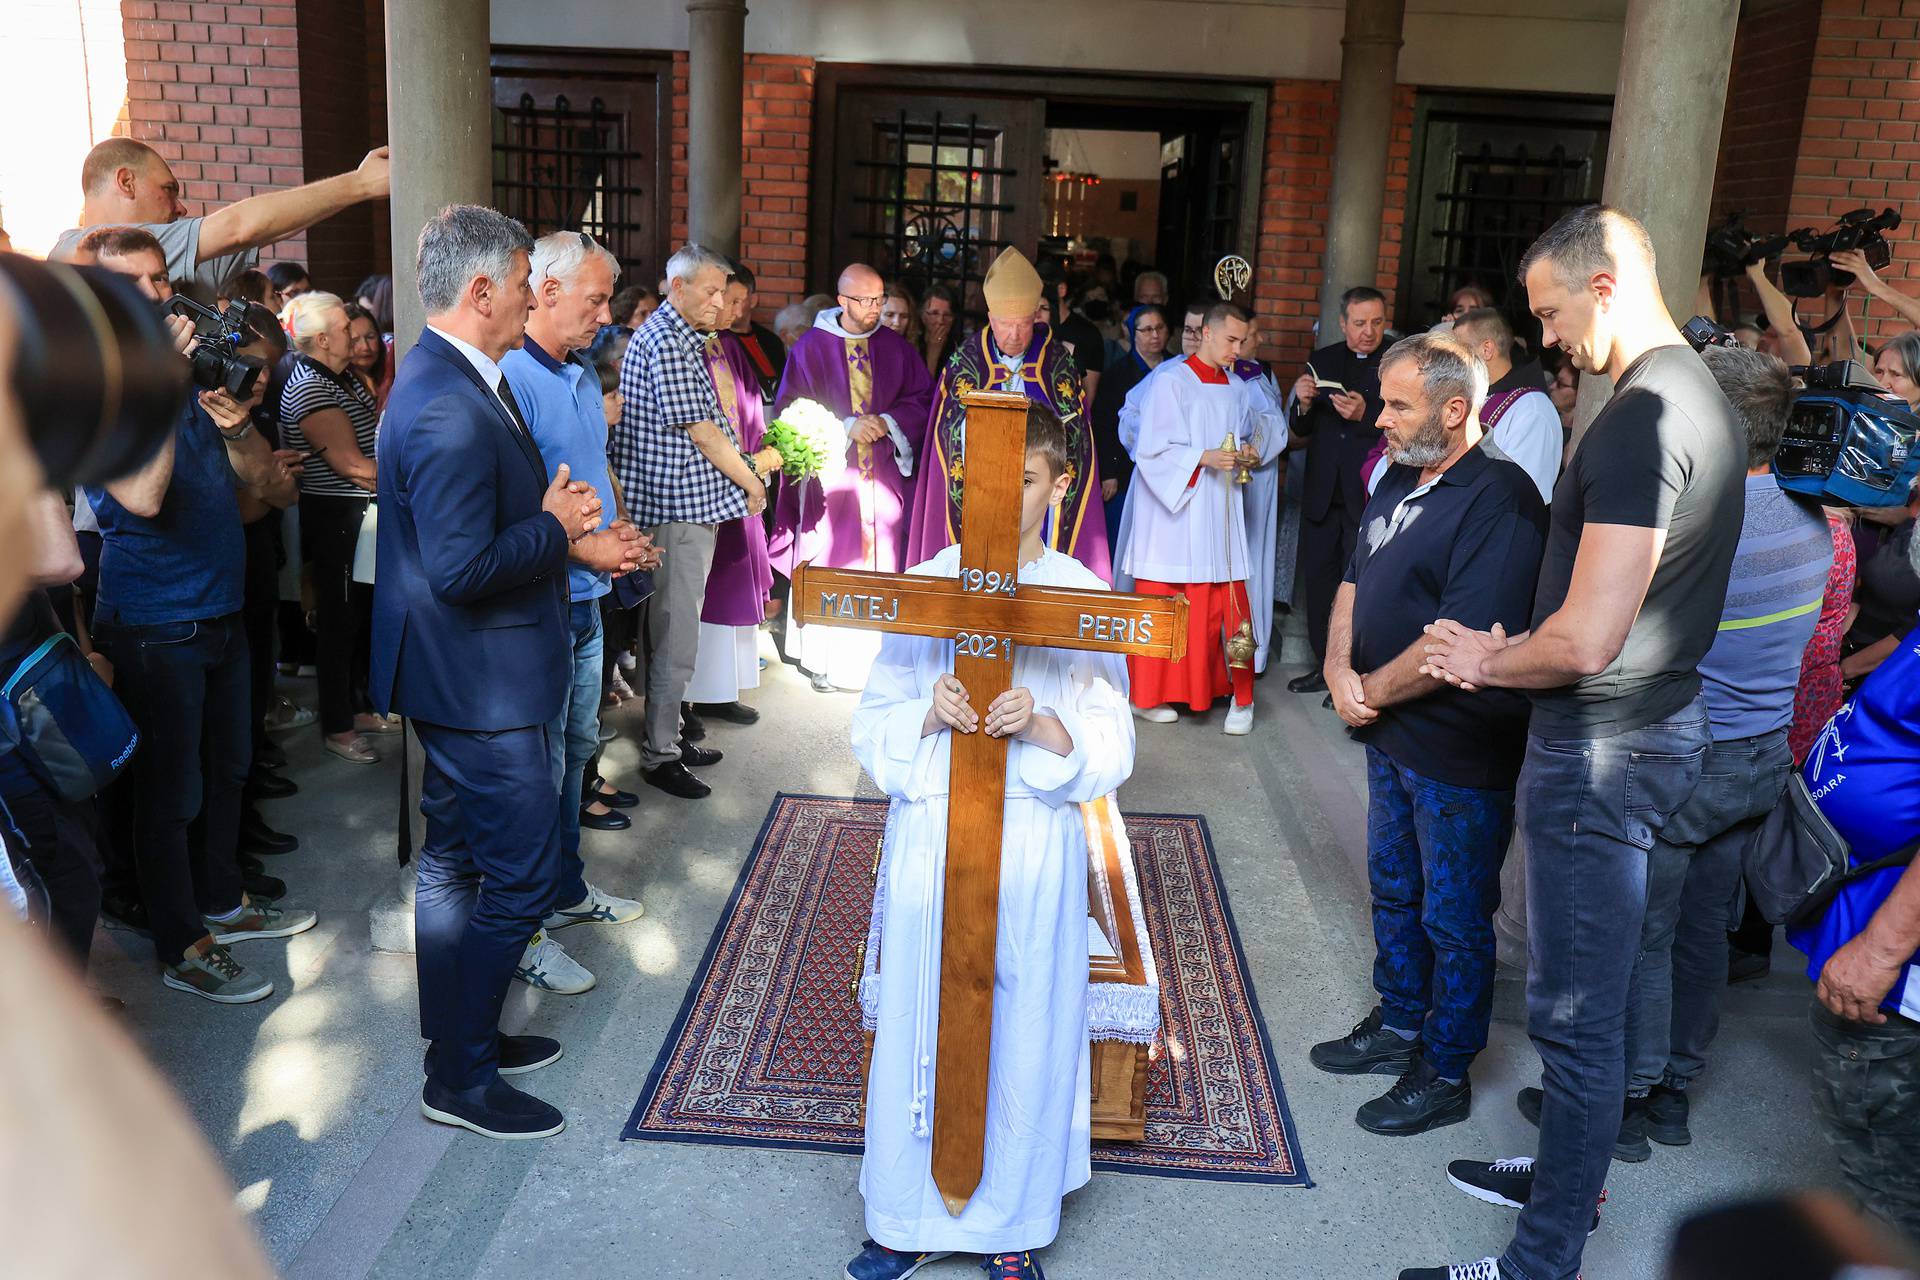 Beograd: Ispraćaj Mateja Periša u crkvi svetog Antuna Padovanskog